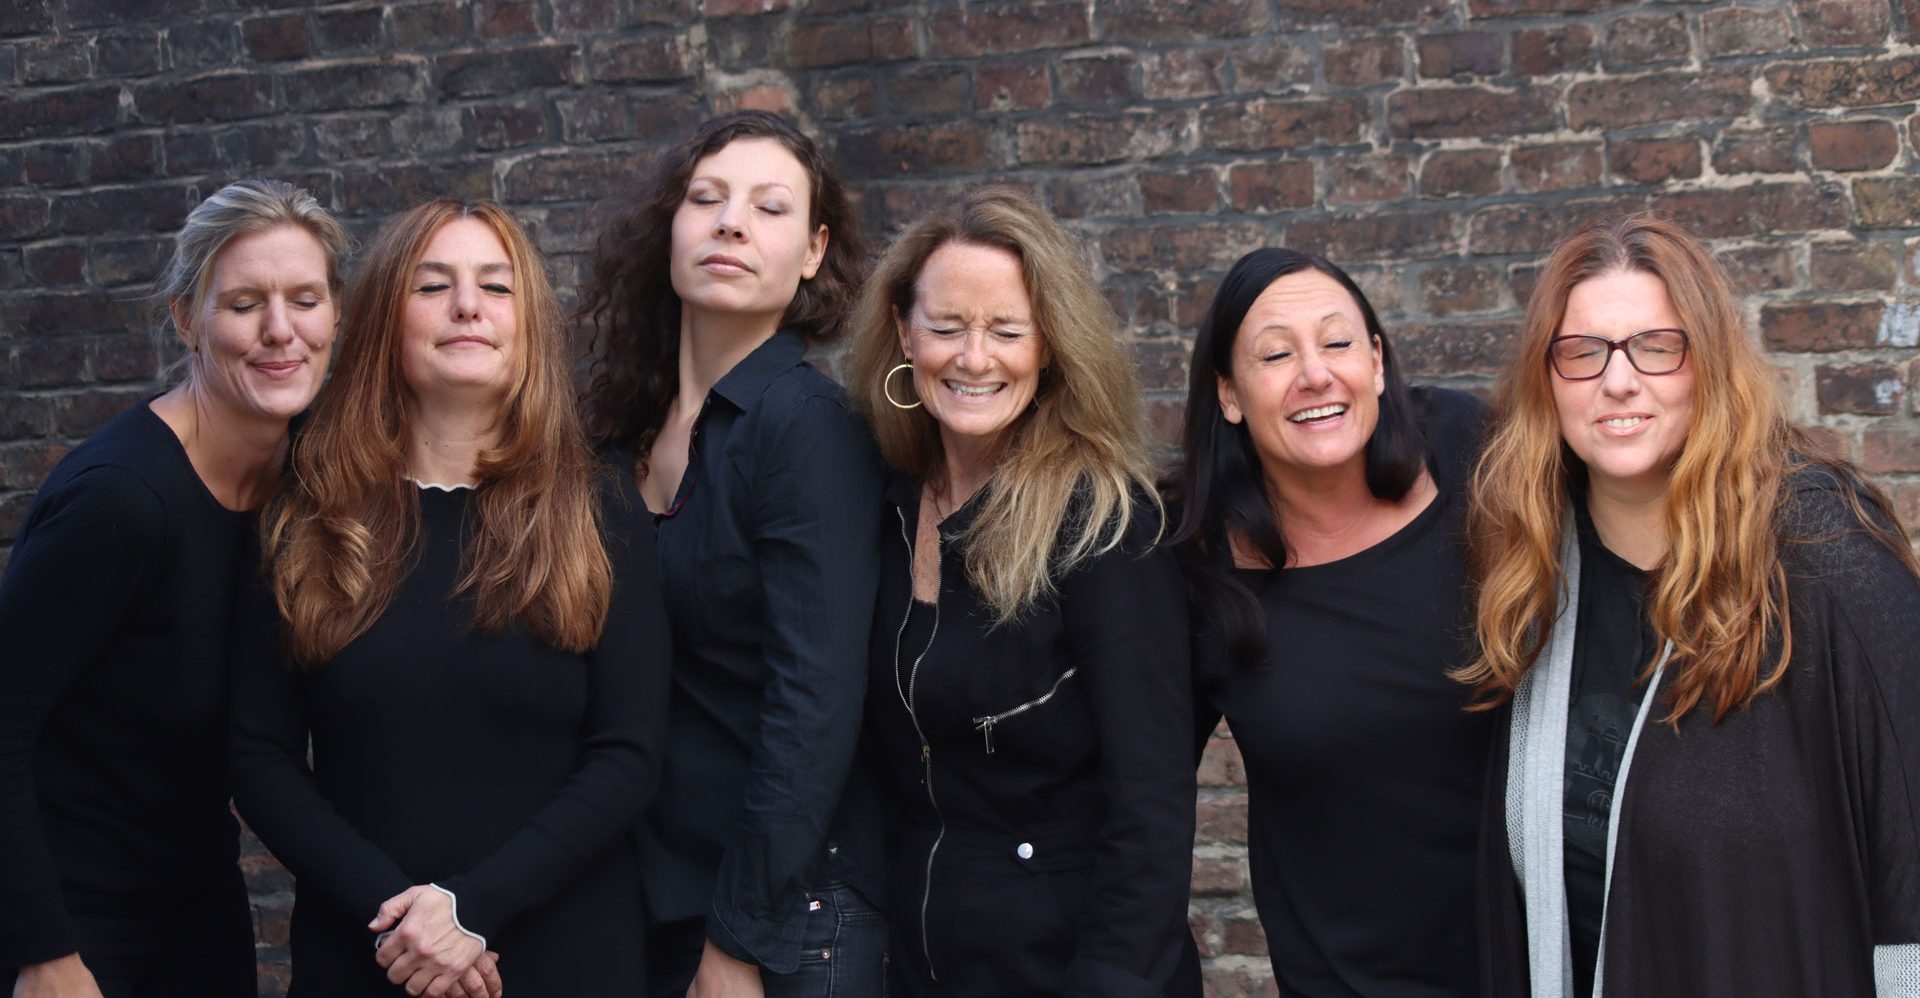 Teambild mit den sechs Mitarbeiterinnen mit geschlossenen Augen